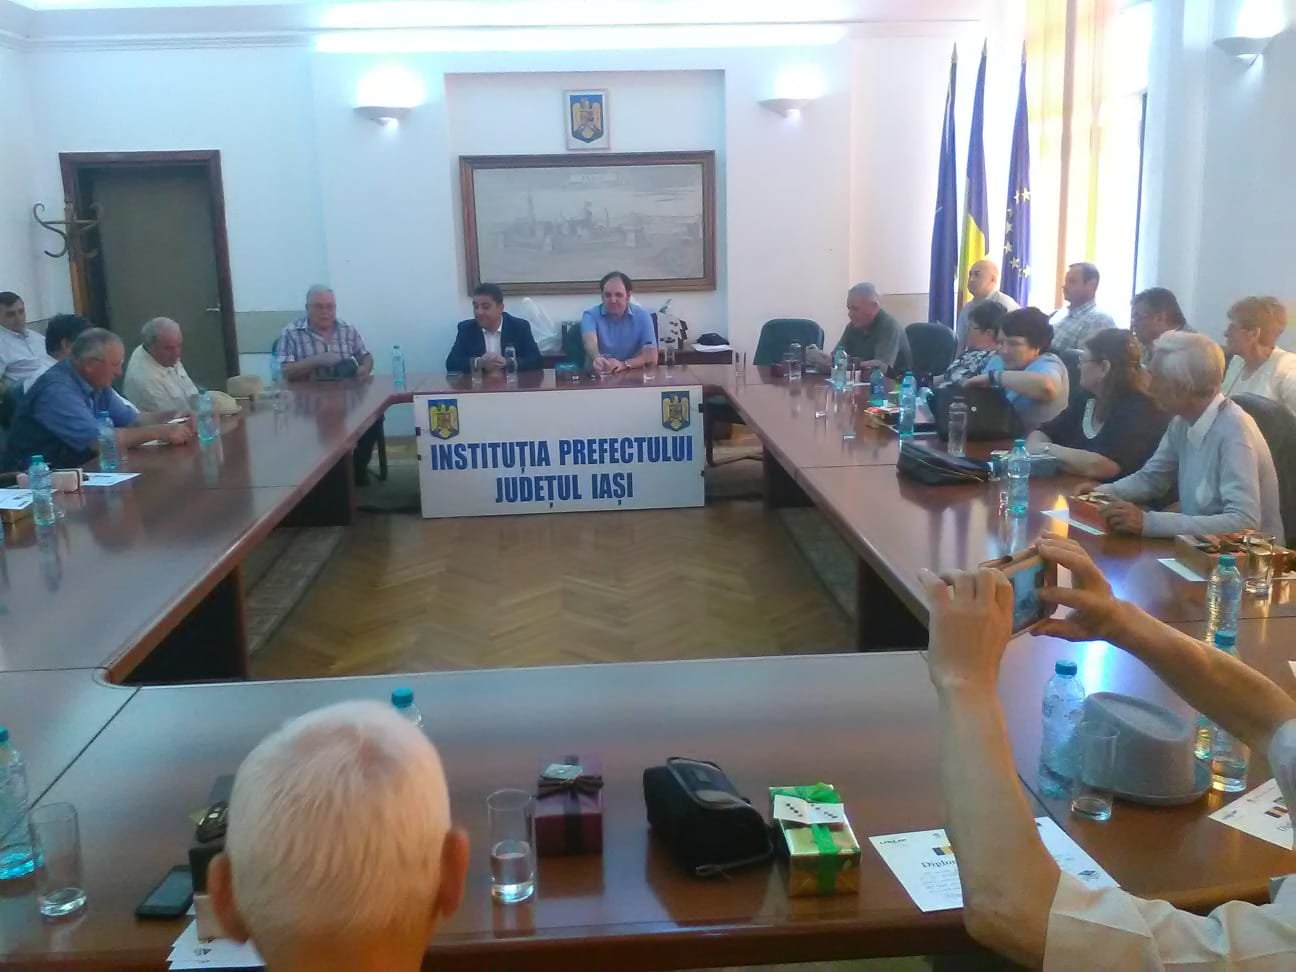  Educatorii, învățătorii și profesorii pensionari din Iași, felicitați în cadrul unei ceremonii